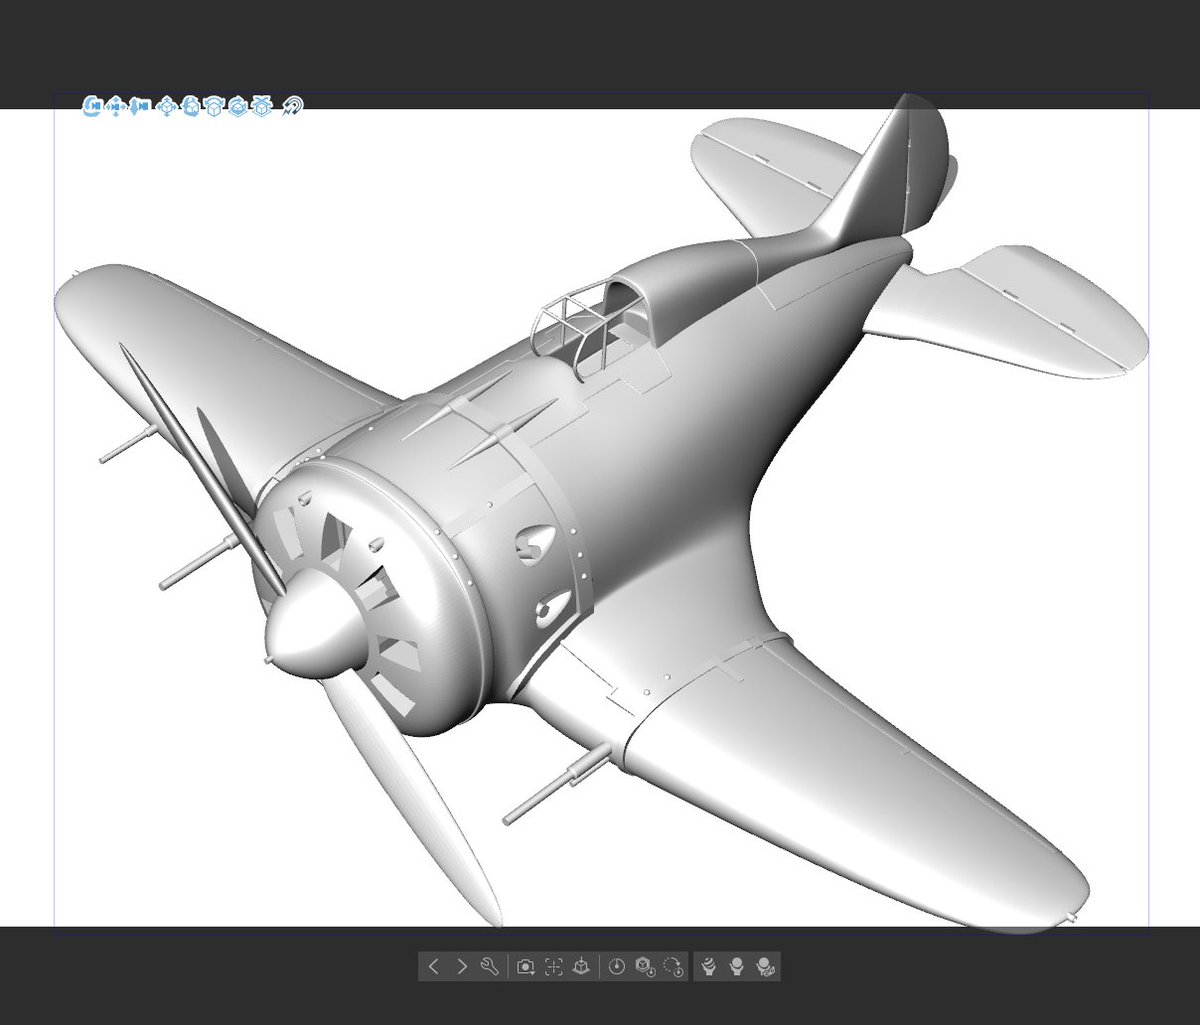 Blender、3Dをもっと有効活用する!
これは2024年の当スタジオの目標でもあります(去年もその前も言ってた👻
しかして、立体を作ってあらためて気づくことも多いのですが、よくこんな可愛いデフォルメみたいな機体が実戦投入されていましたね… 